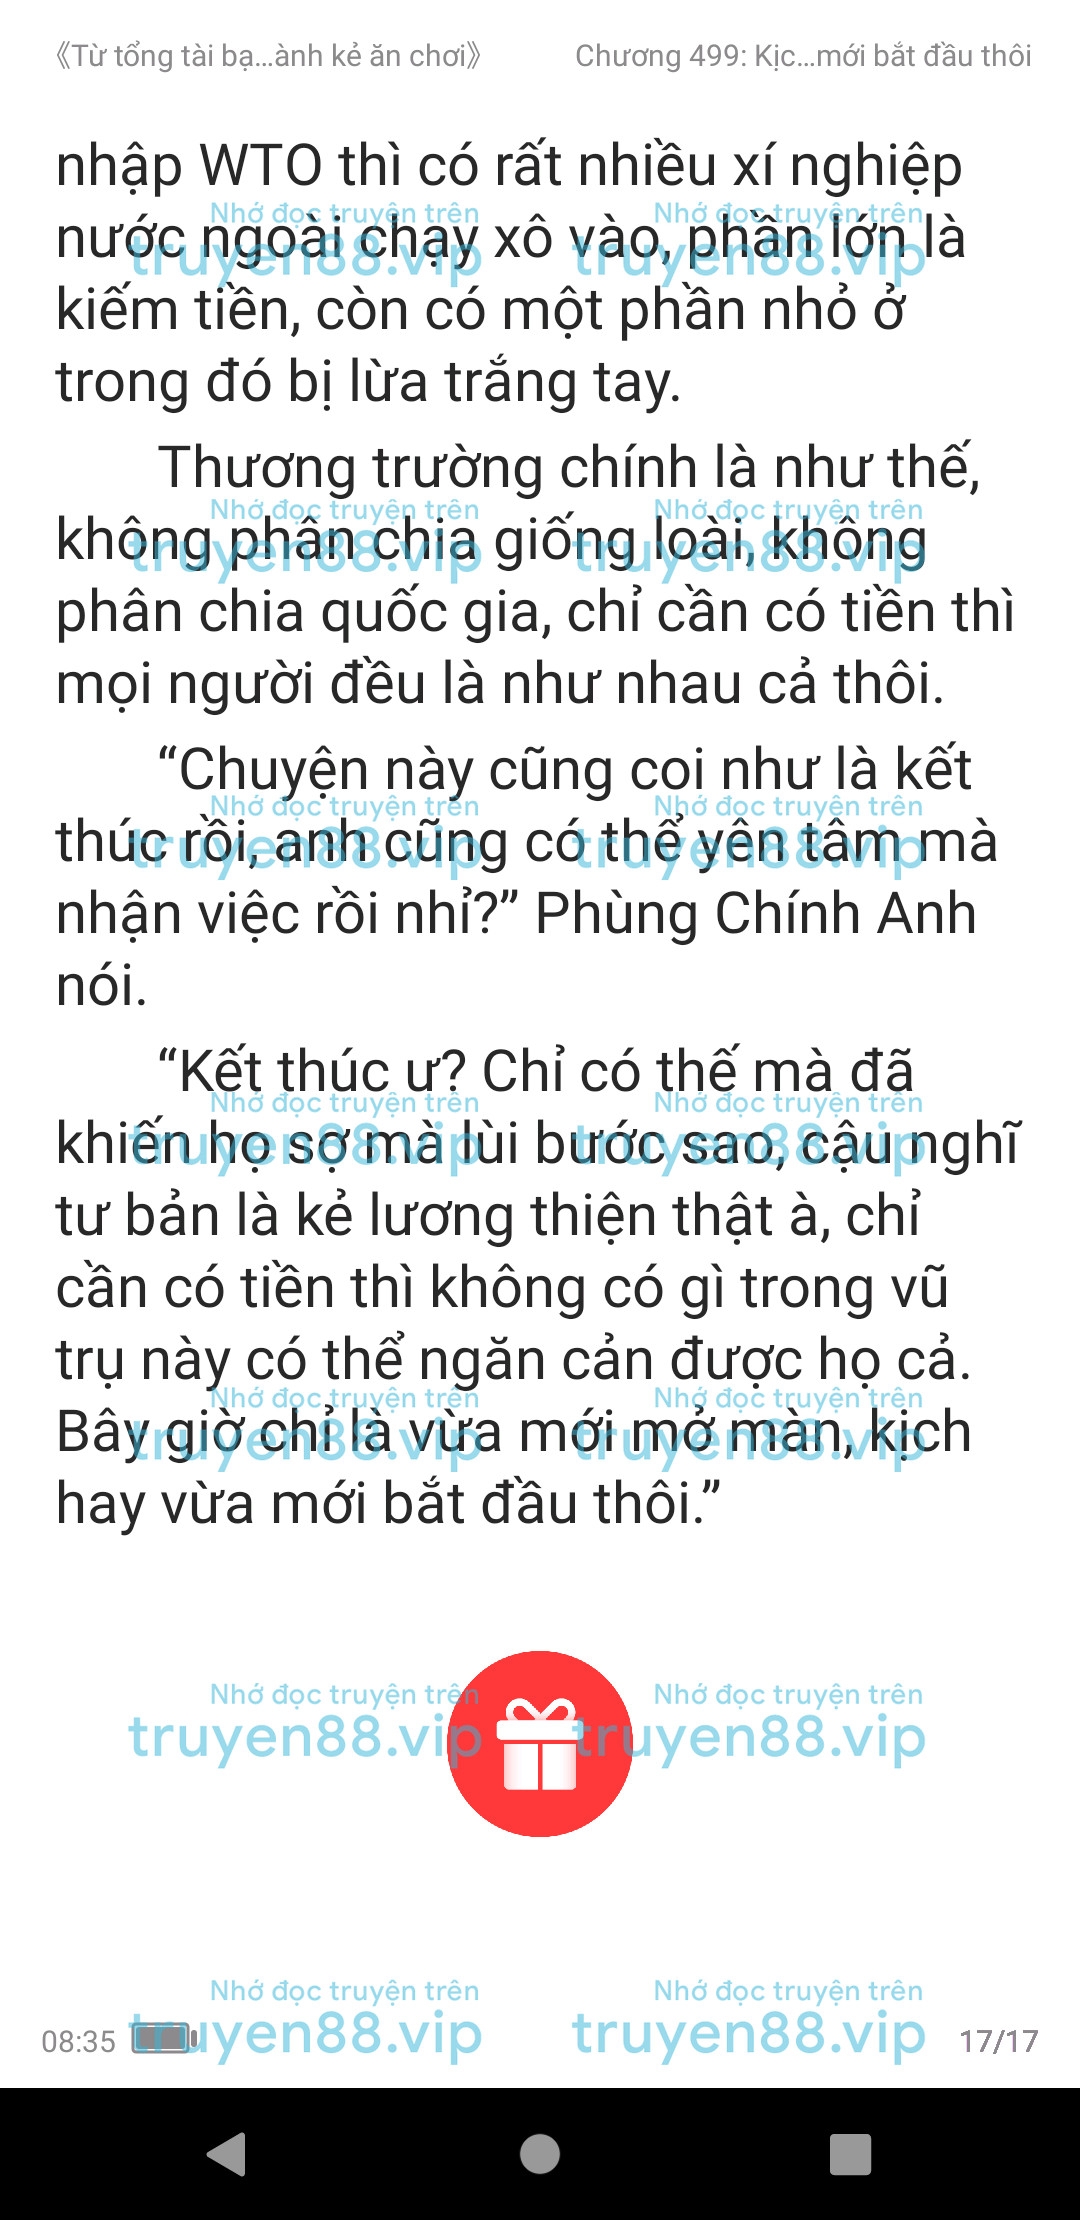 ke-an-choi-bien-tong-tai-499-2